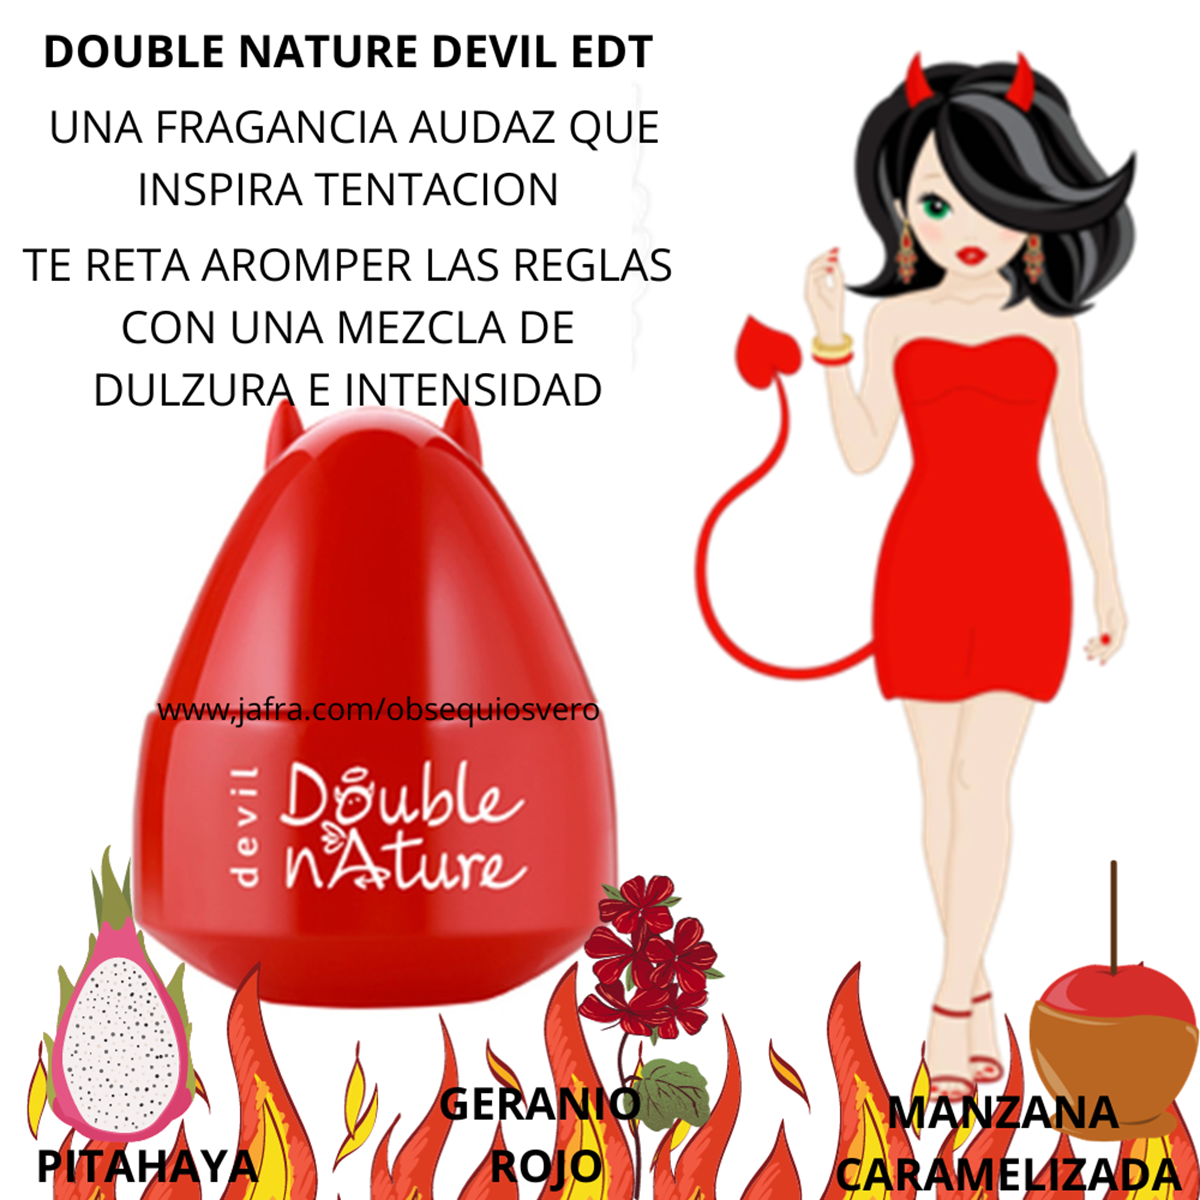 DOUBLE NATURE DEVIL EAU DE TOILETTE JAFRA